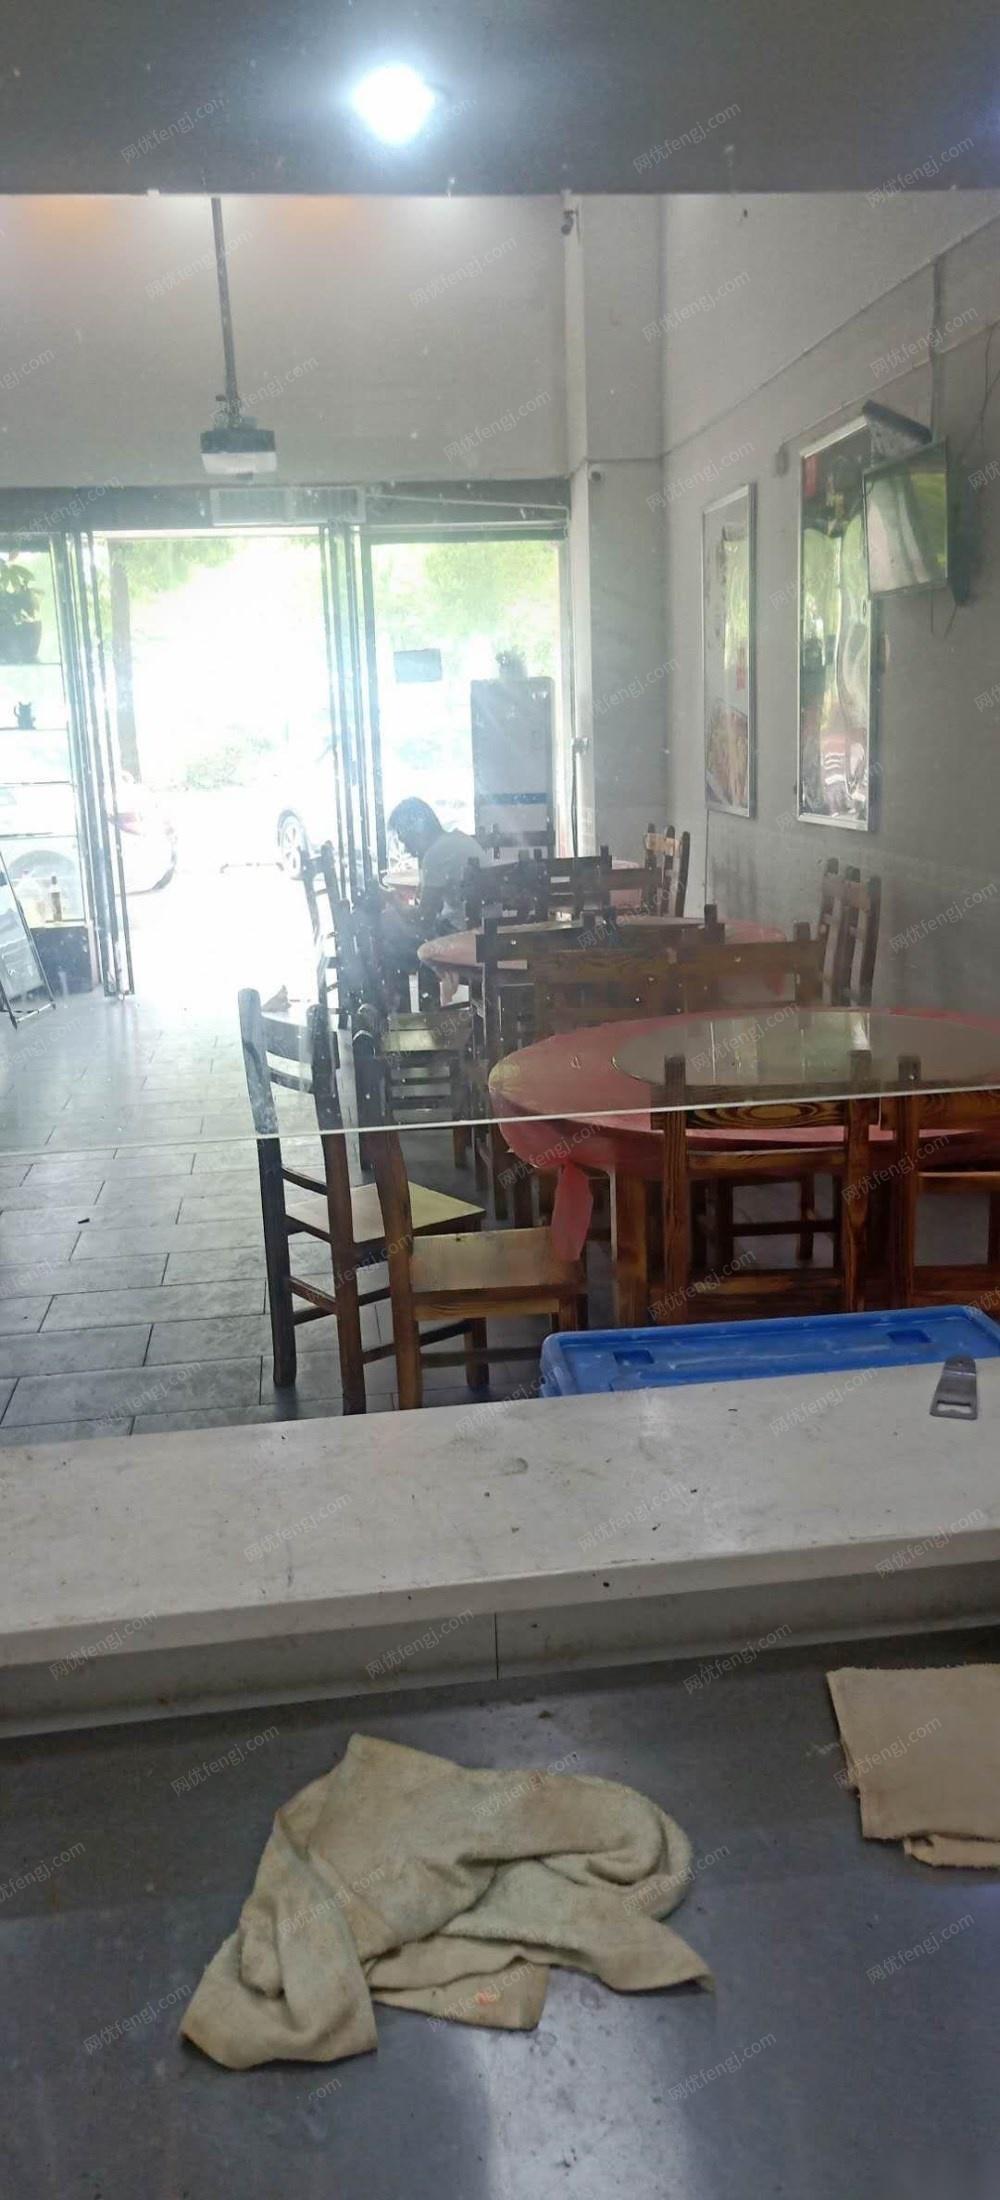 湖南长沙因门面到期出售一整套饭店设备白菜价处理 16000元